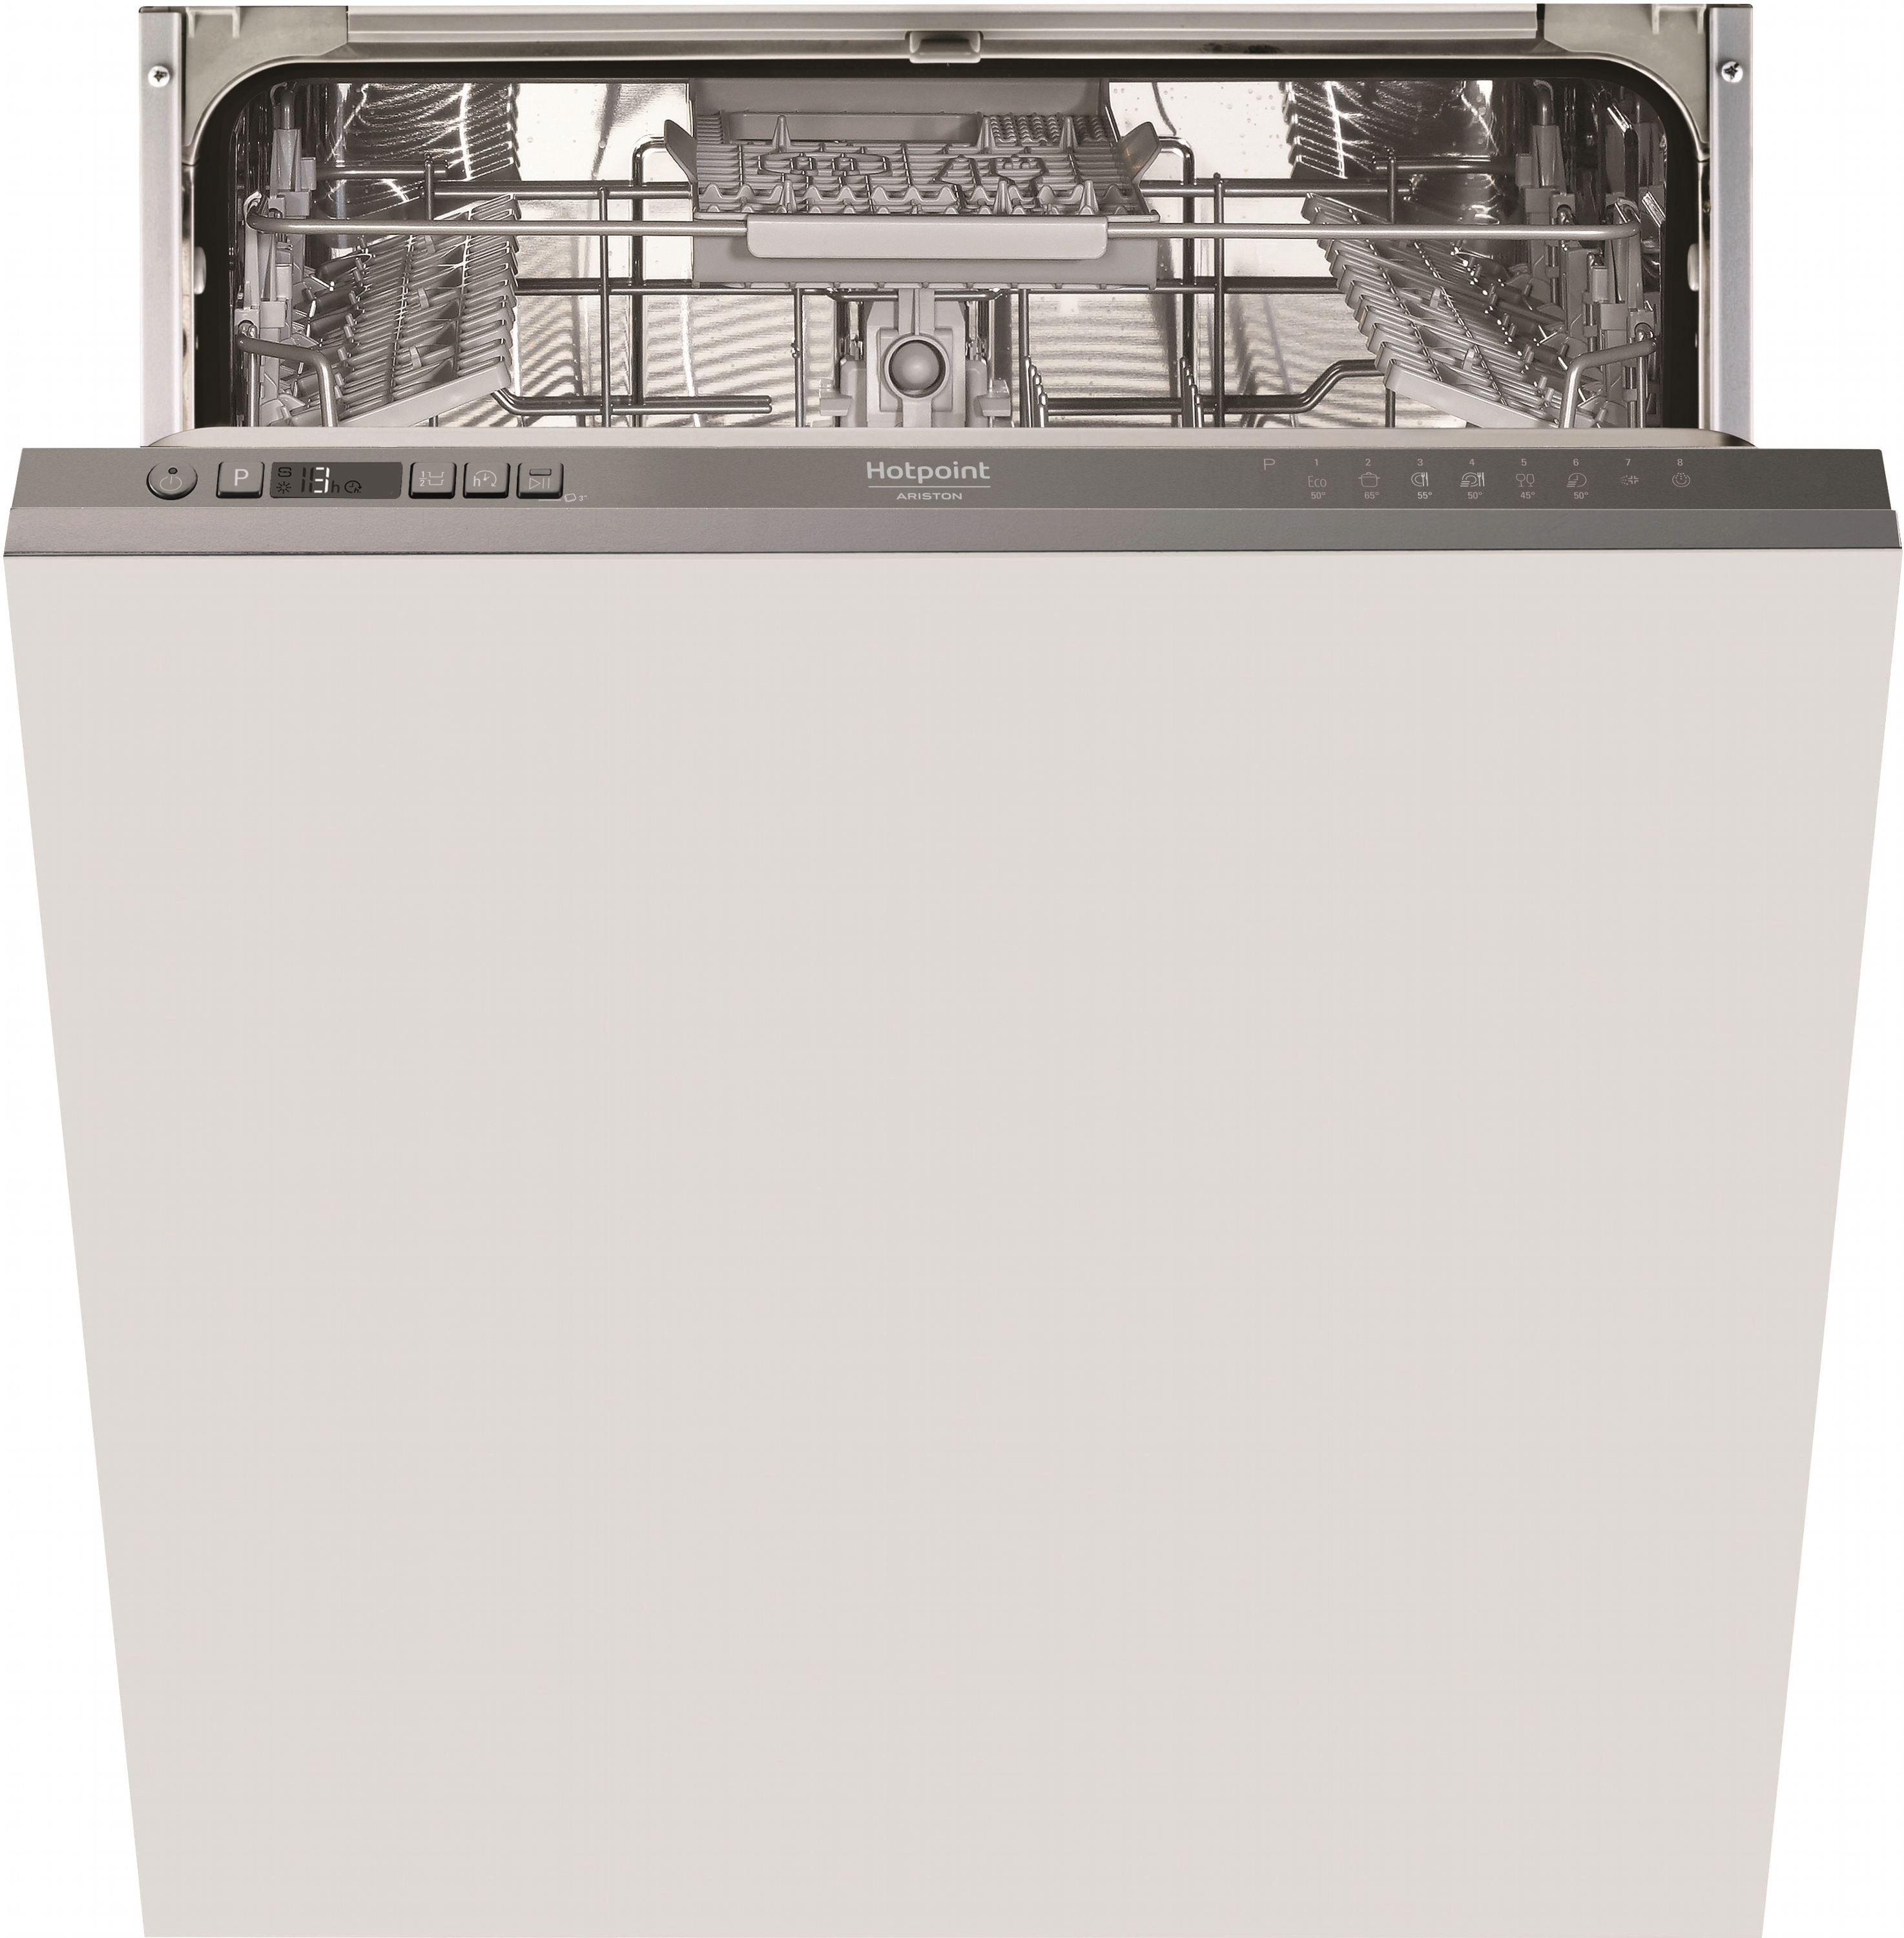 Посудомоечная машина Hotpoint Ariston HI5010C в интернет-магазине, главное фото